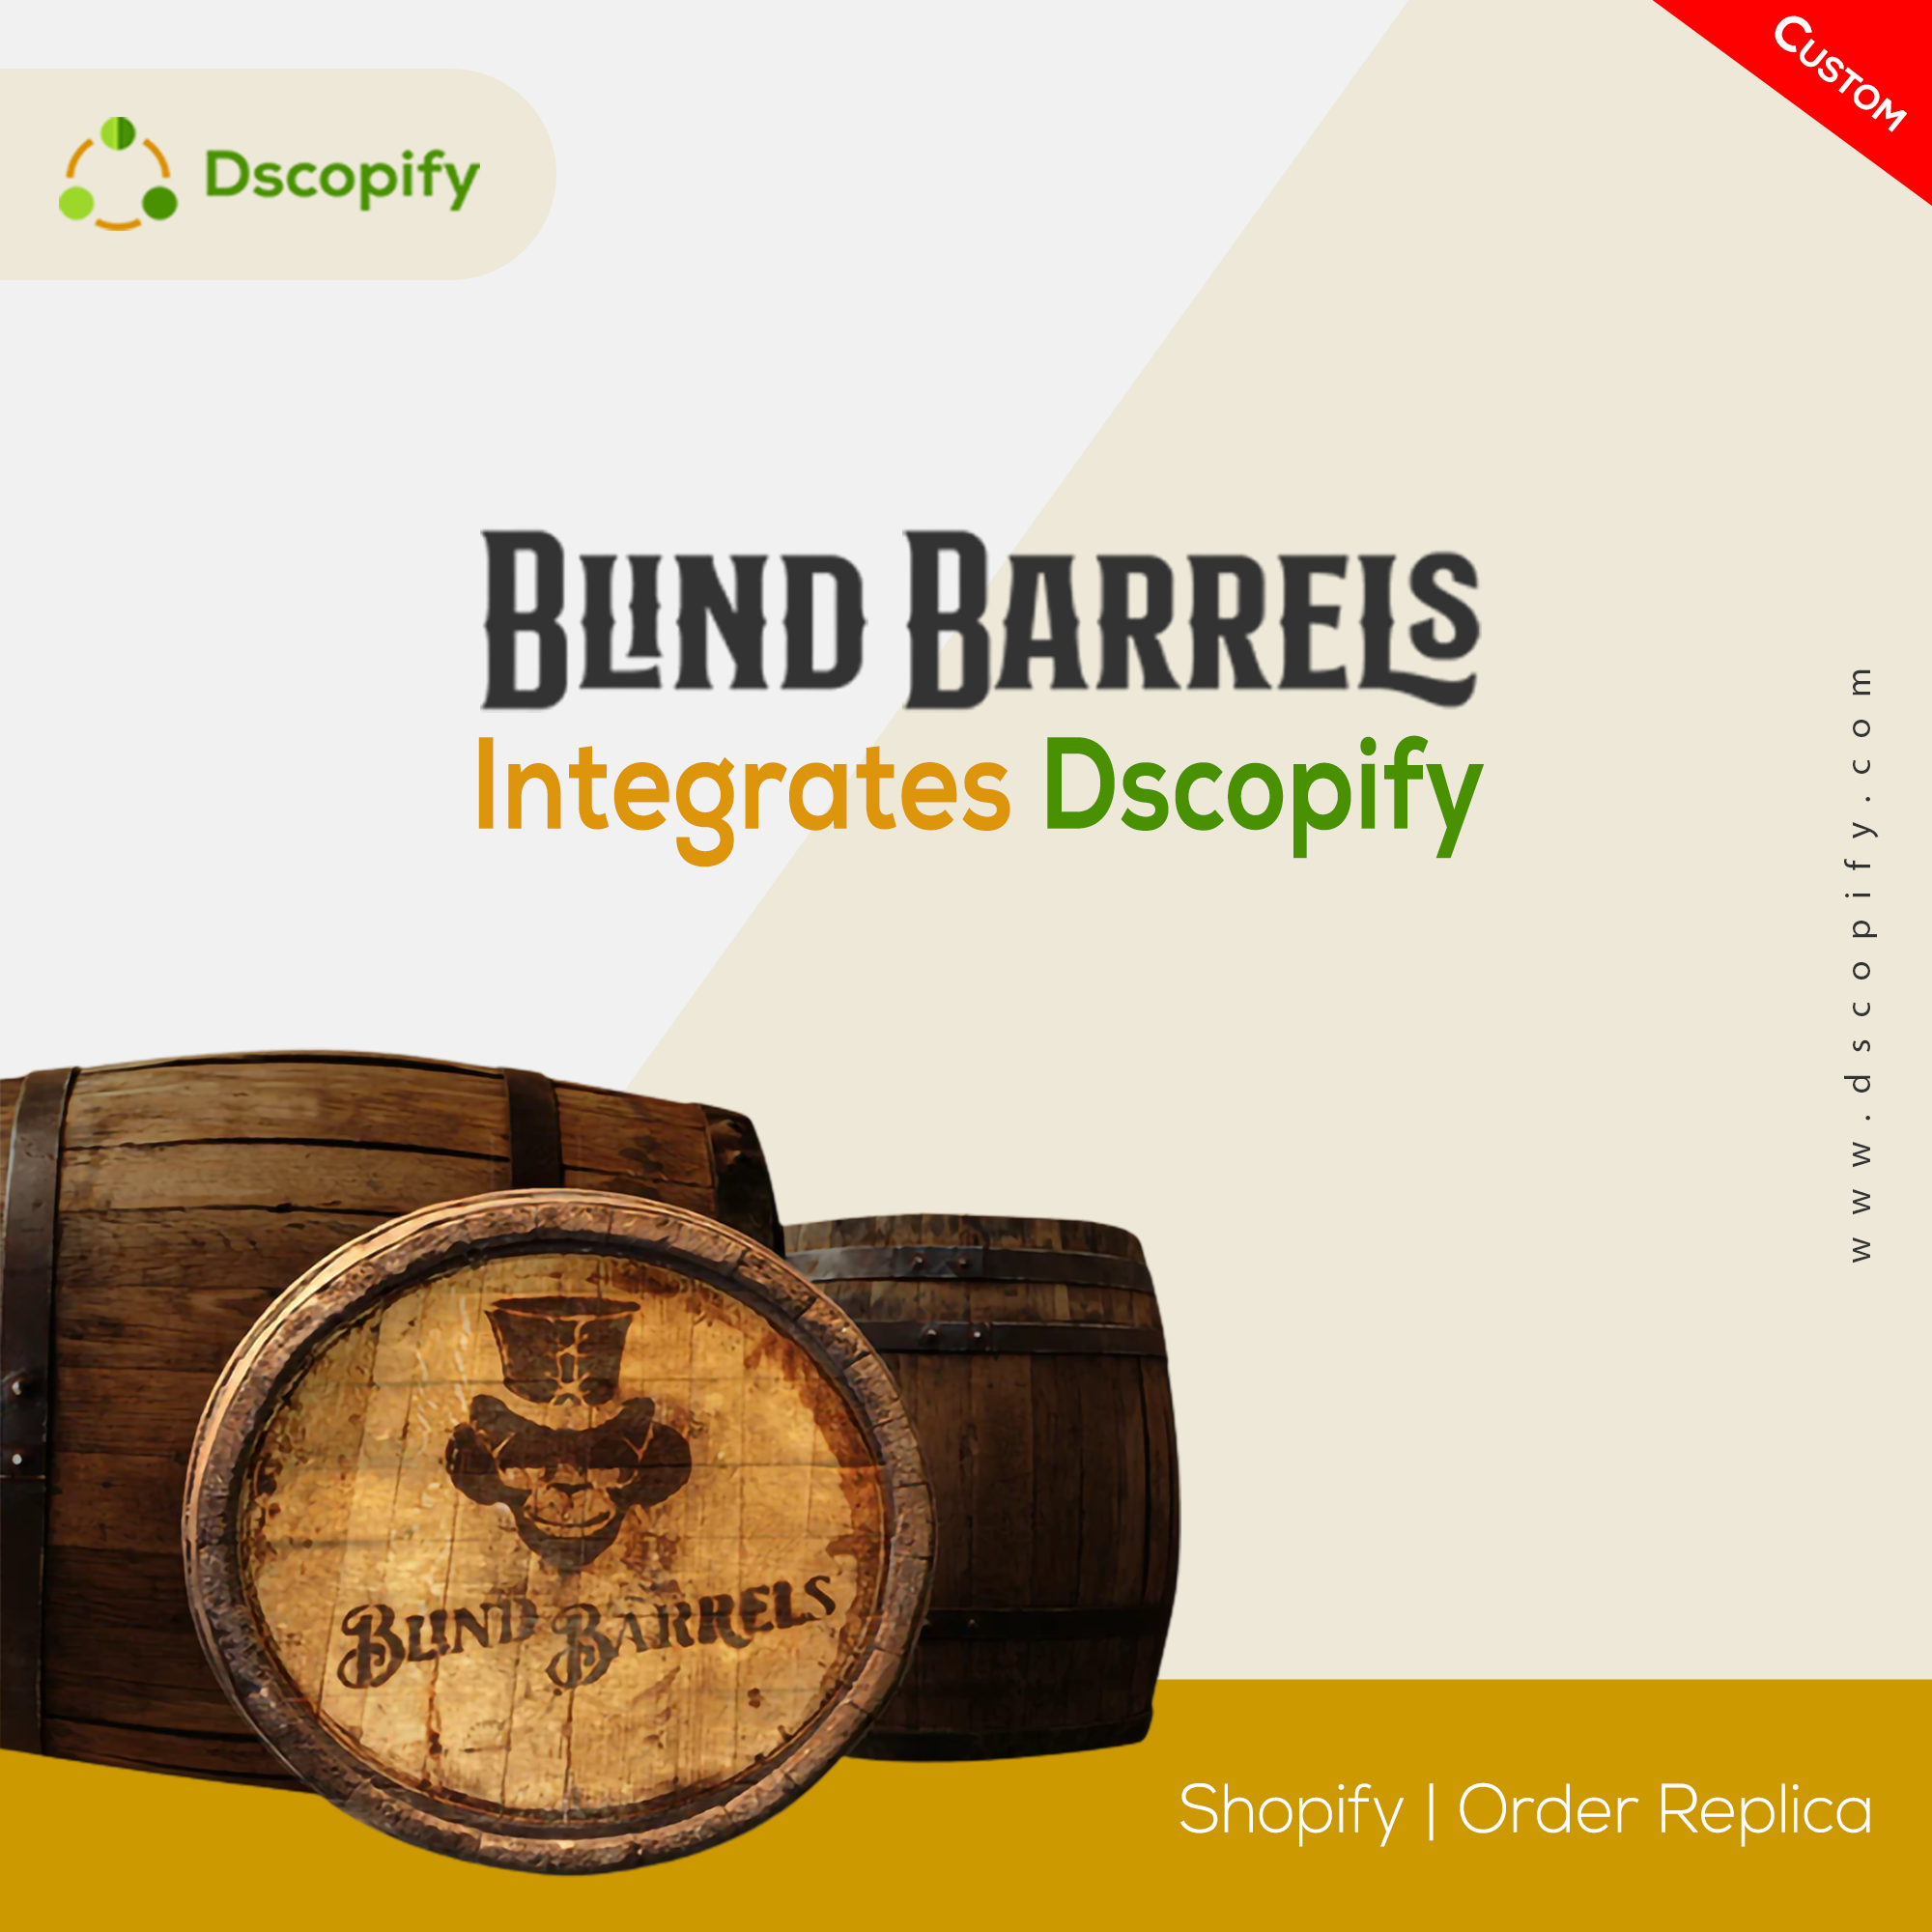 Order Replica for Blind Barrels by Dscopify